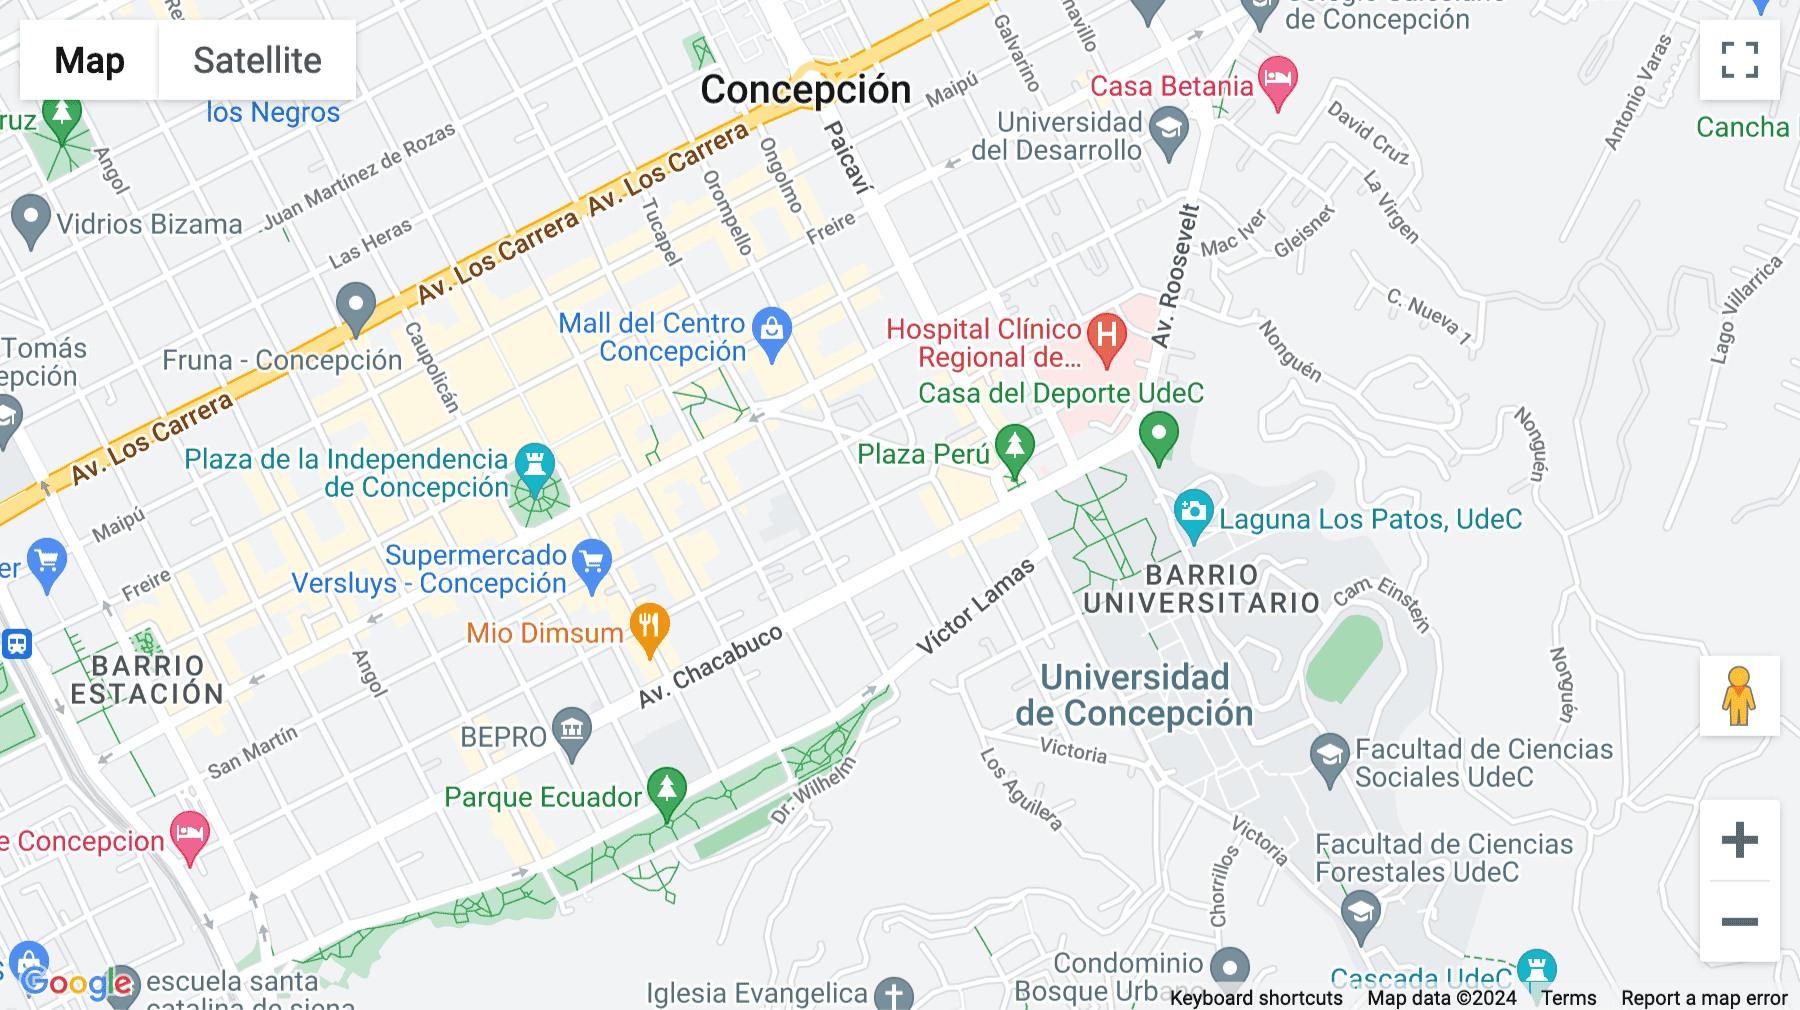 Click for interative map of Orompello 178, 180, Concepción